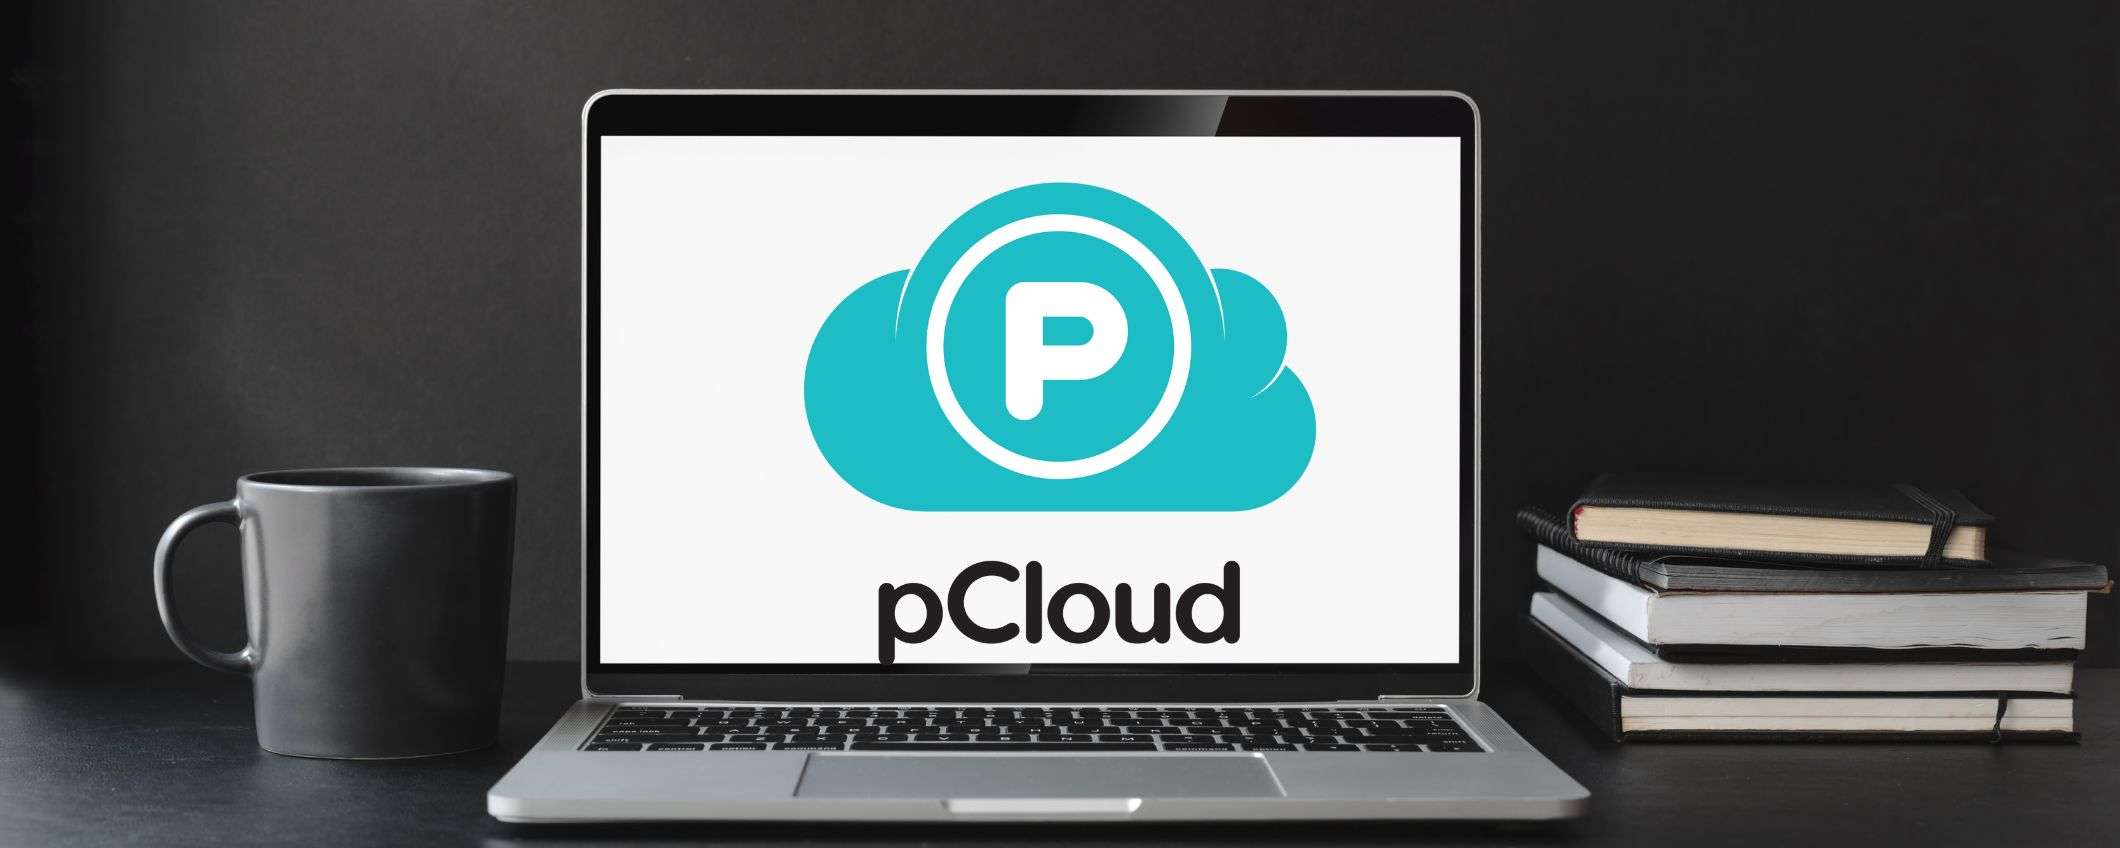 pCloud, per te un mese di cloud ad un prezzo mai visto prima